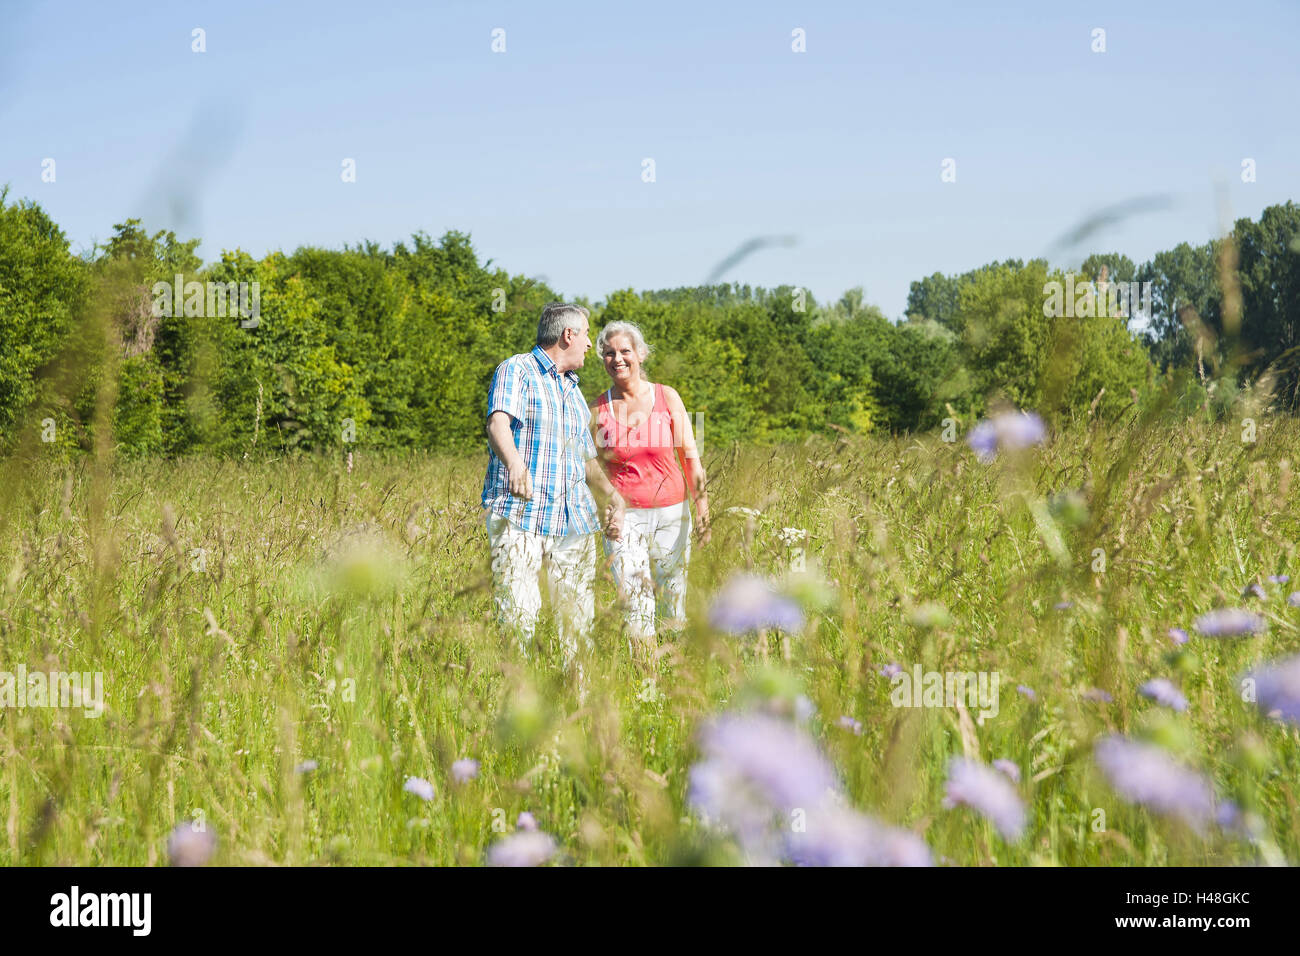 Senior citizen's couple runs in a good mood above a meadow, Stock Photo